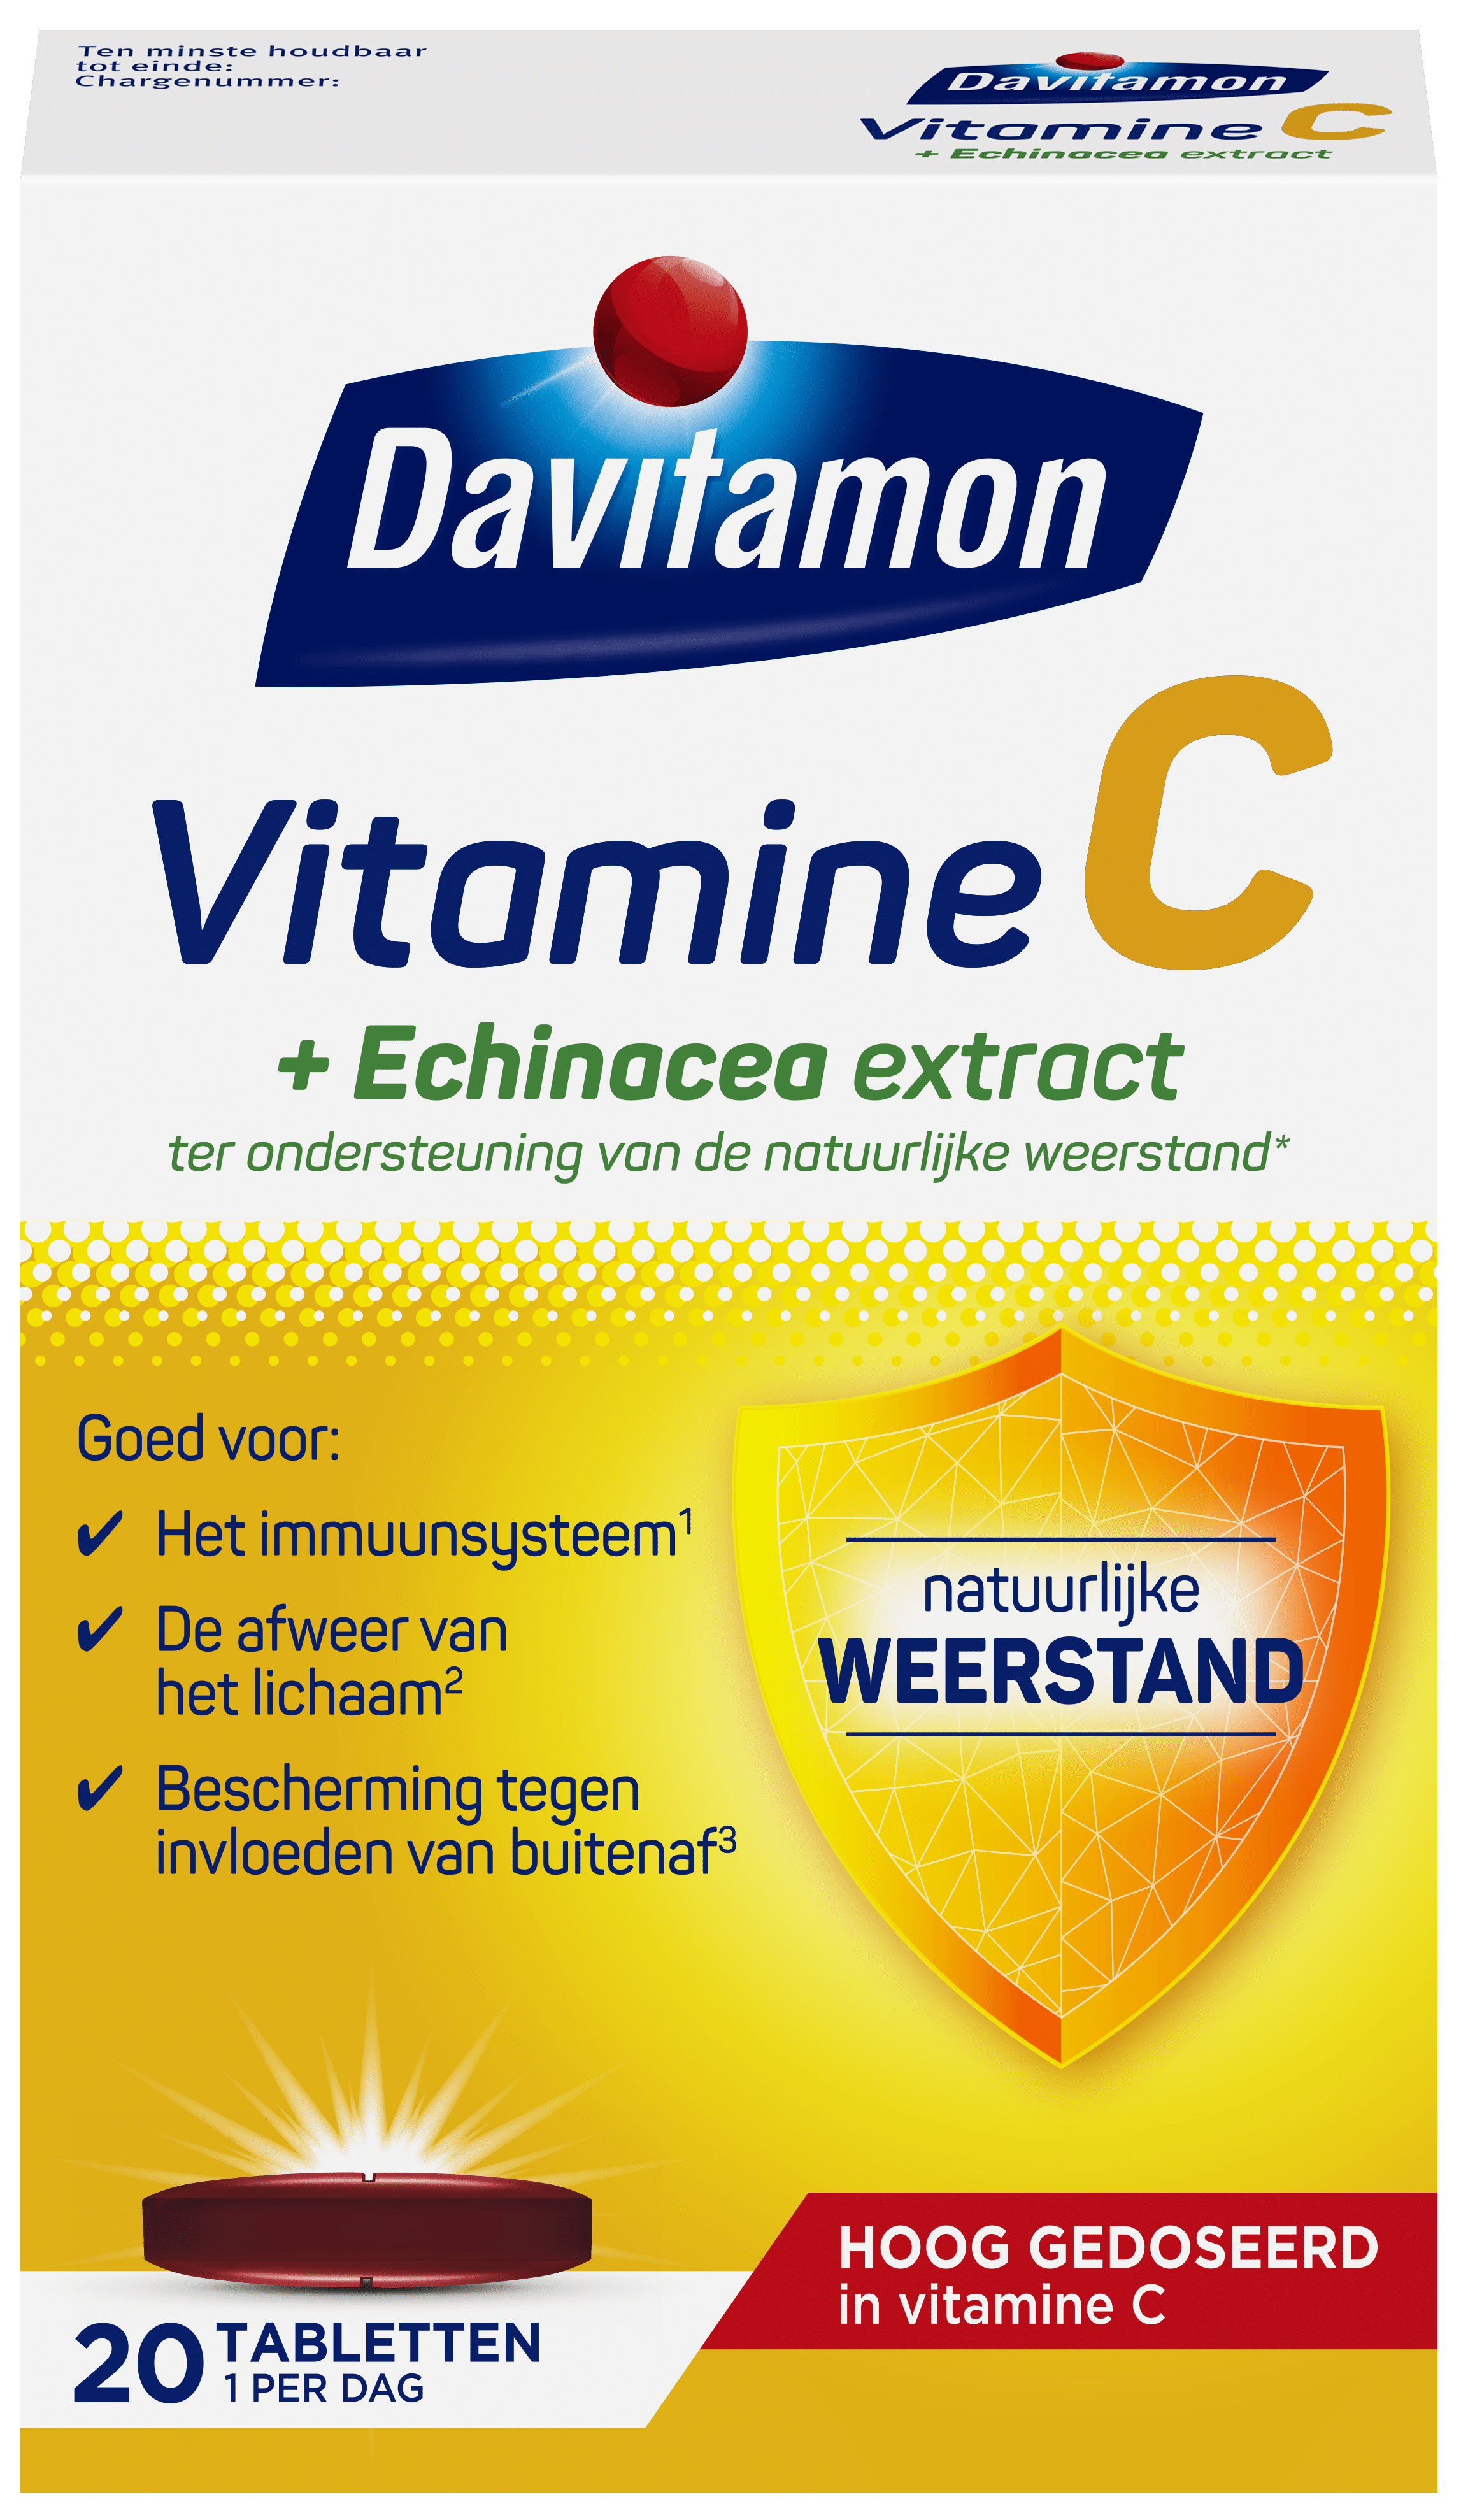 Davitamon Vitamine C + Echinacea